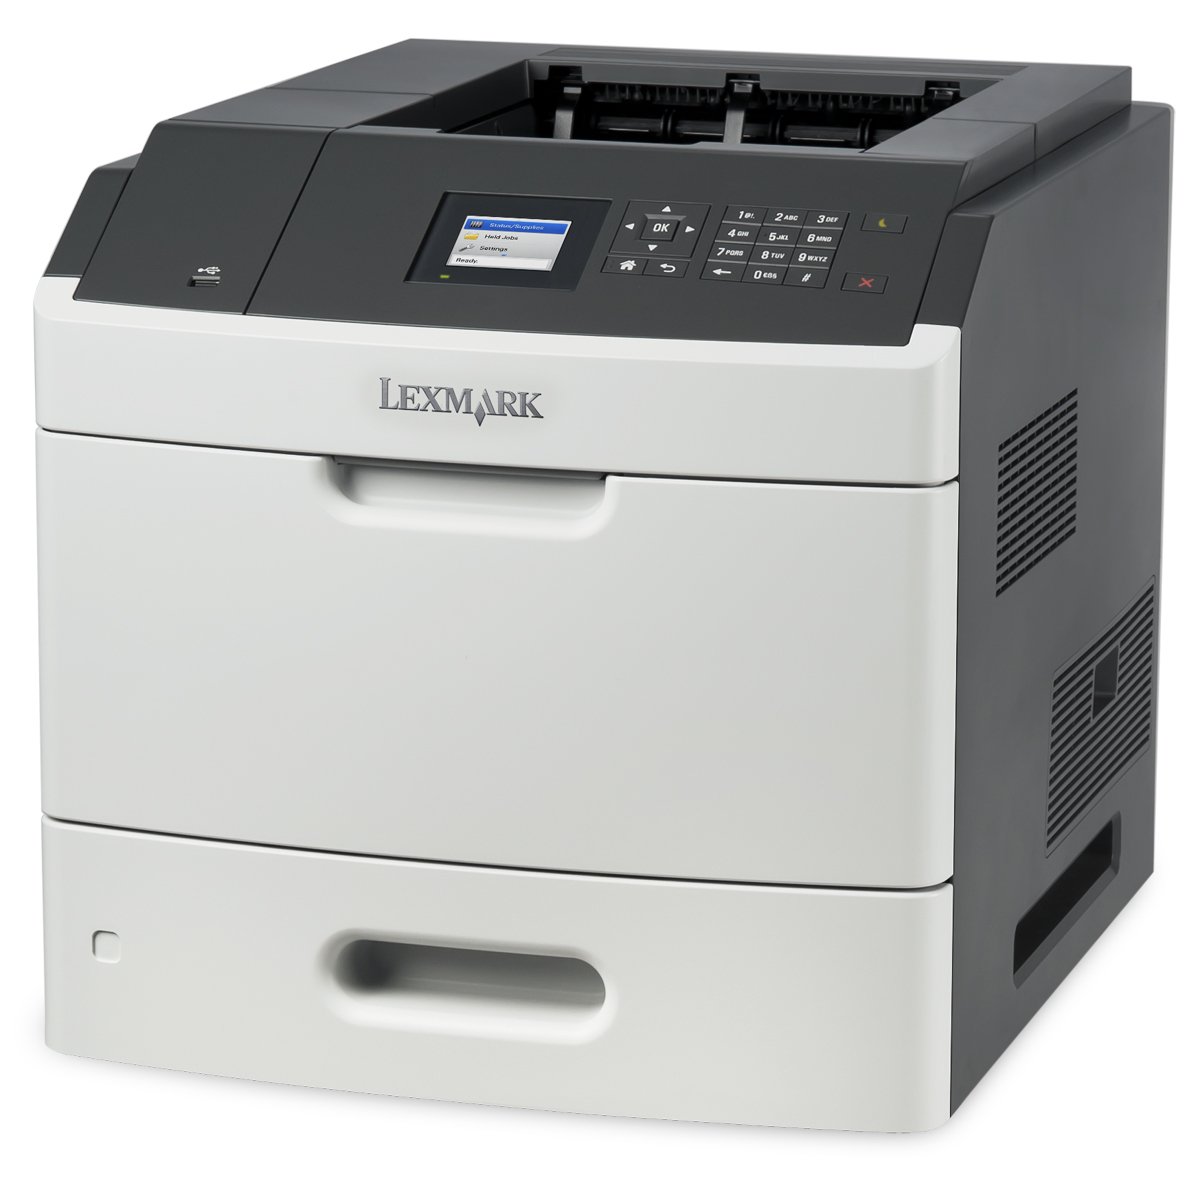 Lexmark MS810n单色激光打印机，网络就绪和专业功能